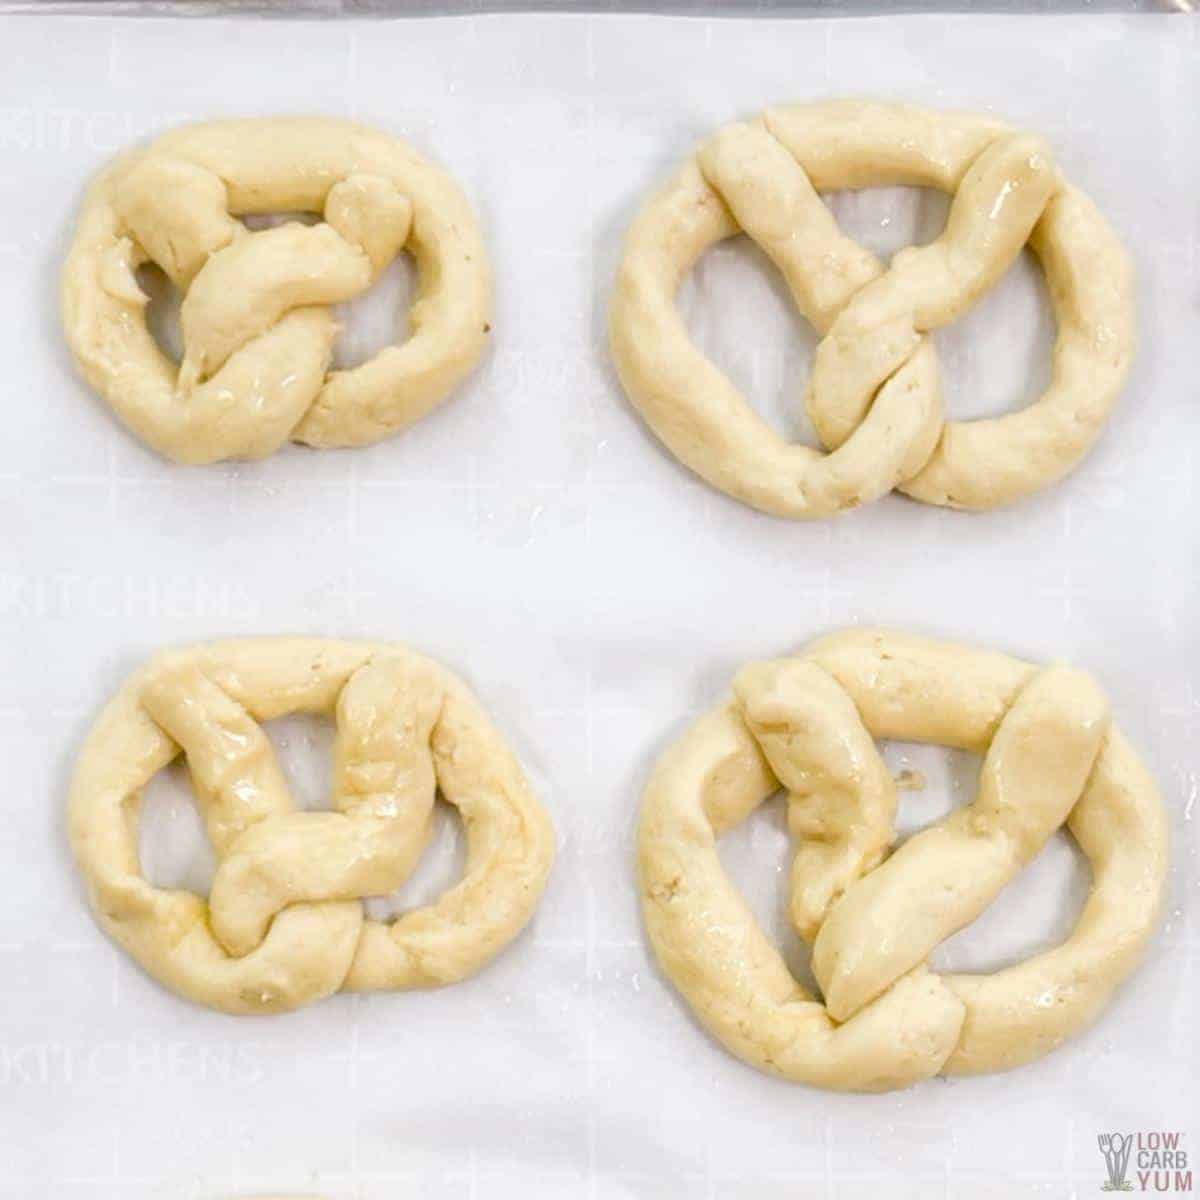 pretzel shaped dough.